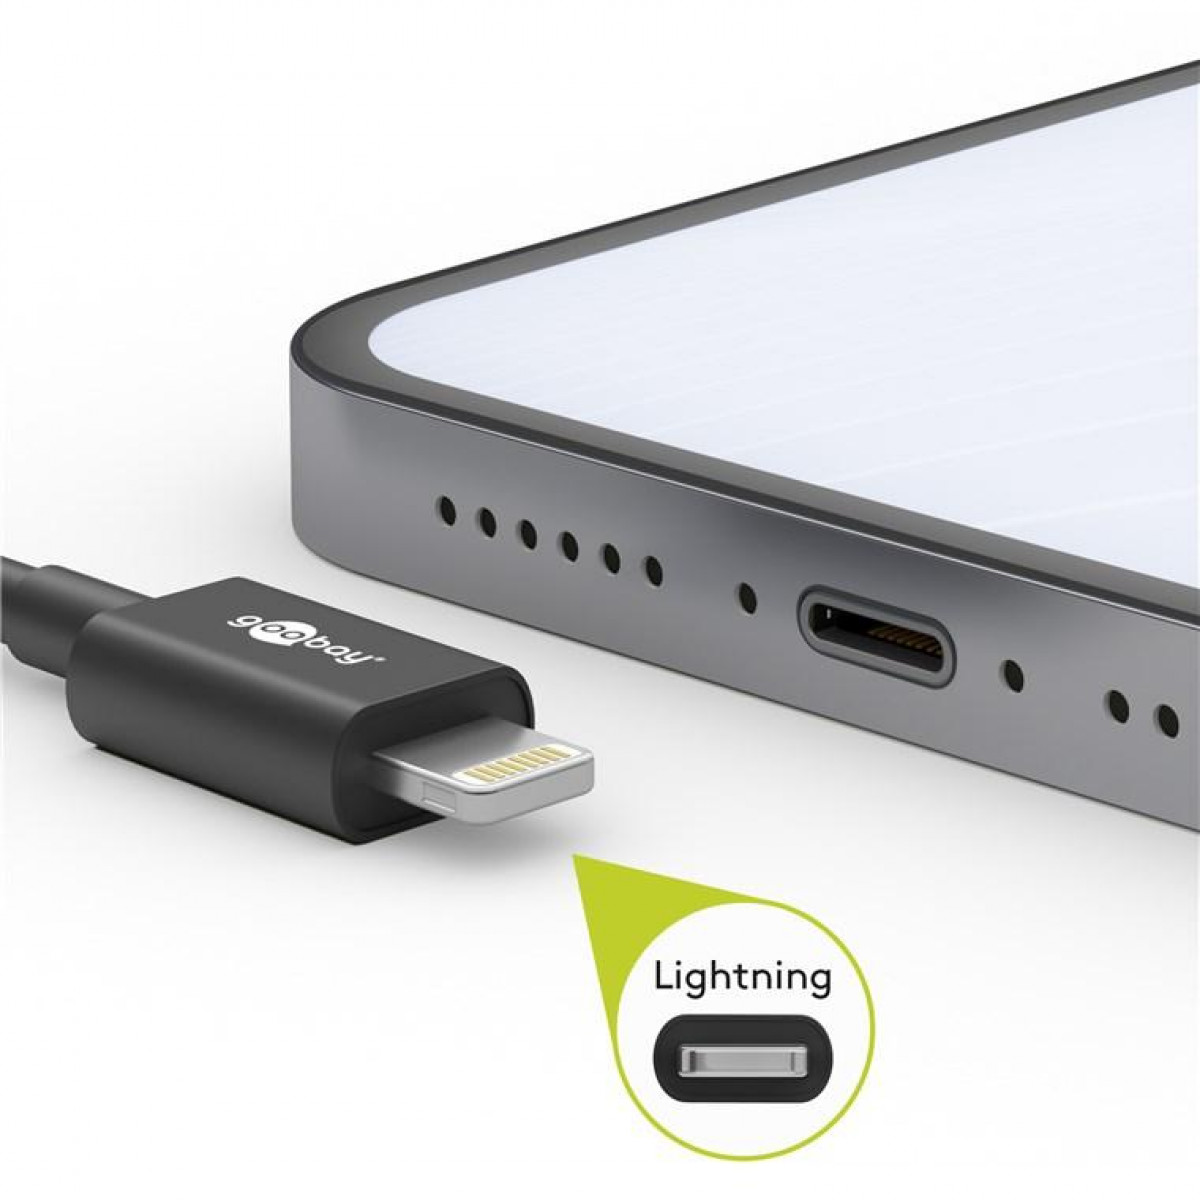 2 Textilkabel, auf USB-C™ (spacegrau/silber), m USB-A Lightning auf Metallsteckern Textilkabel Lightning GOOBAY mit